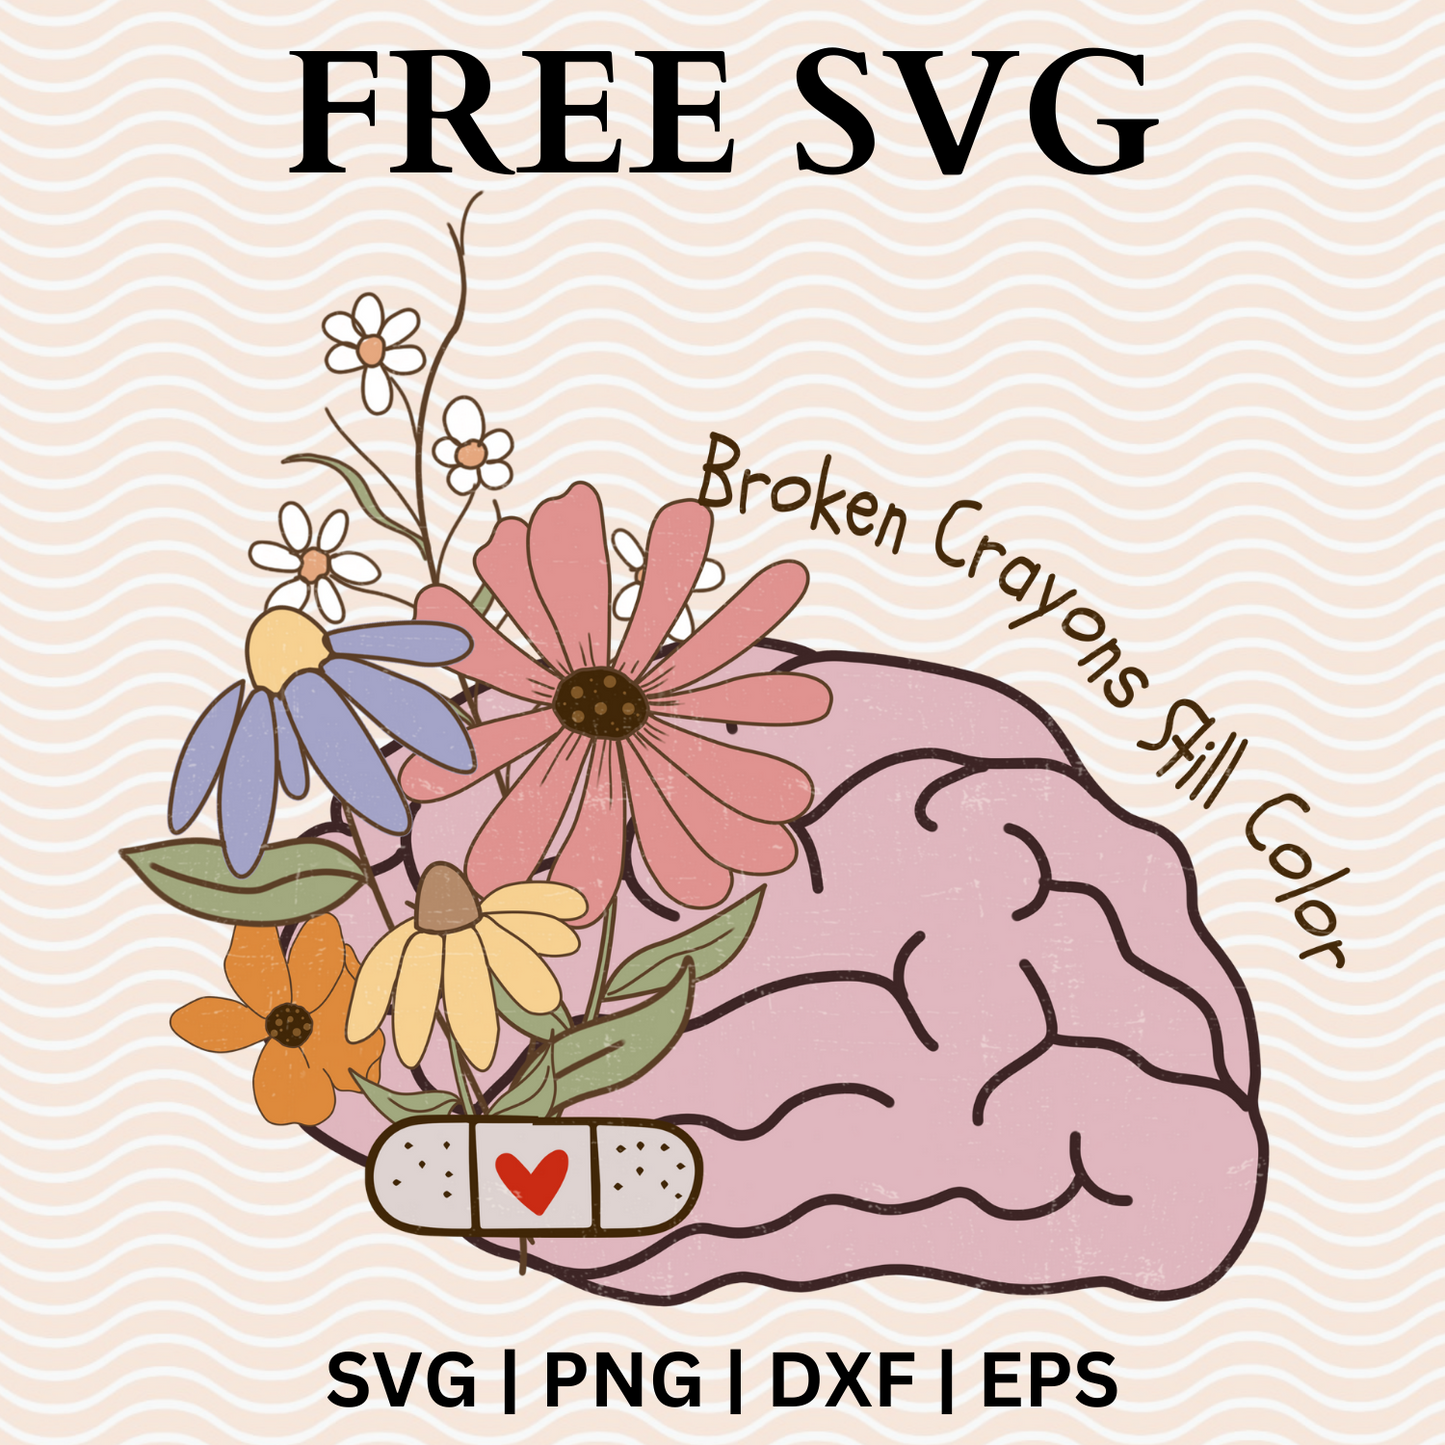 Broken Crayons Still Color SVG Free File For Cricut & PNG Download-8SVG